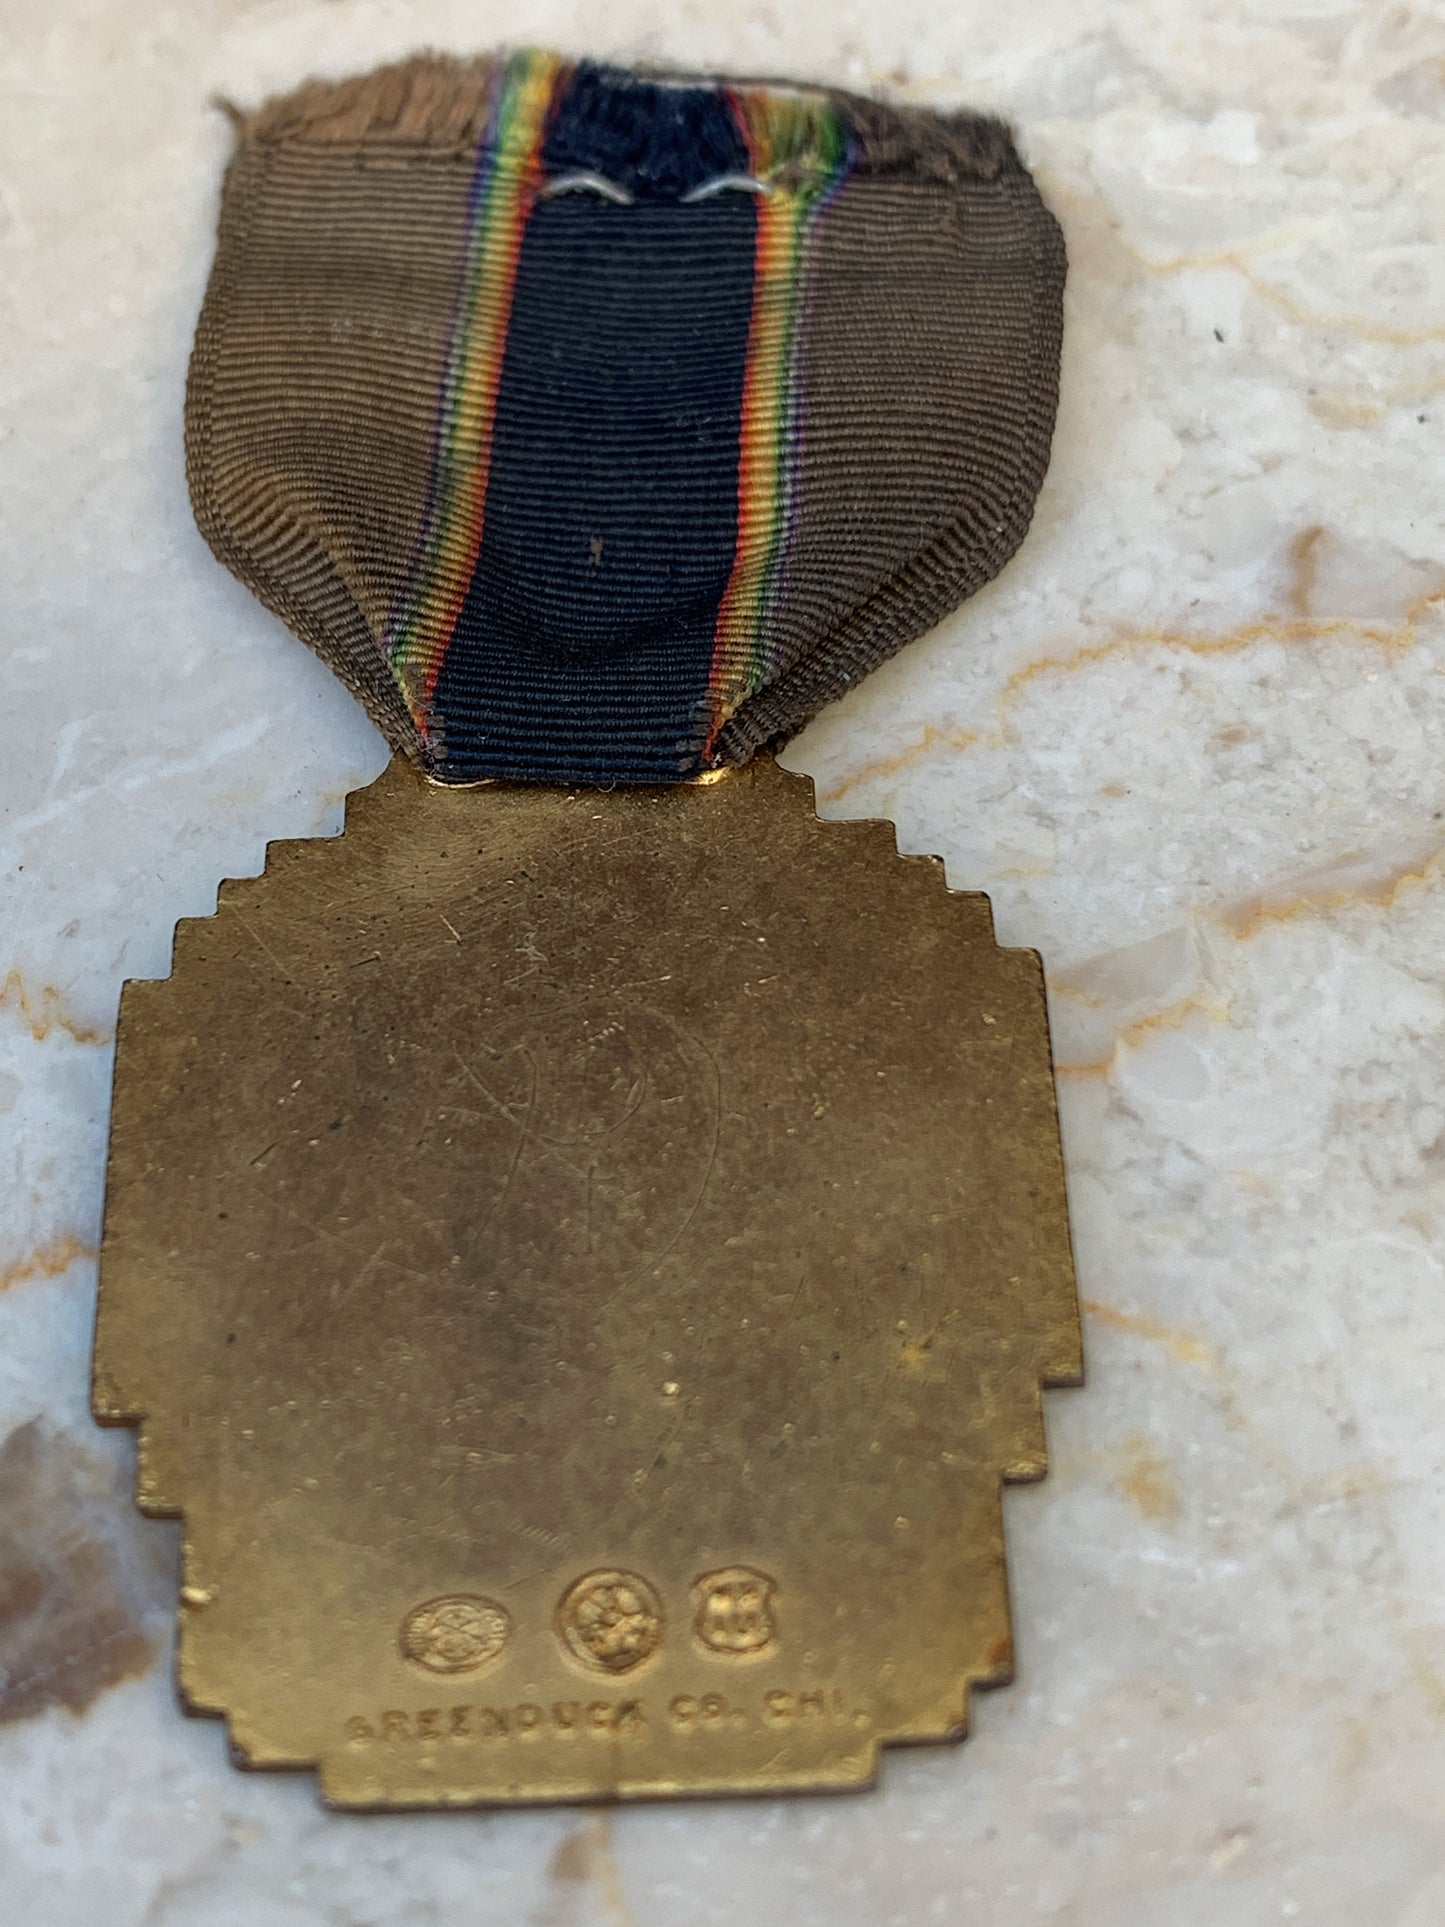 Juneau, Alaska 1940 Legion Medal - no pin